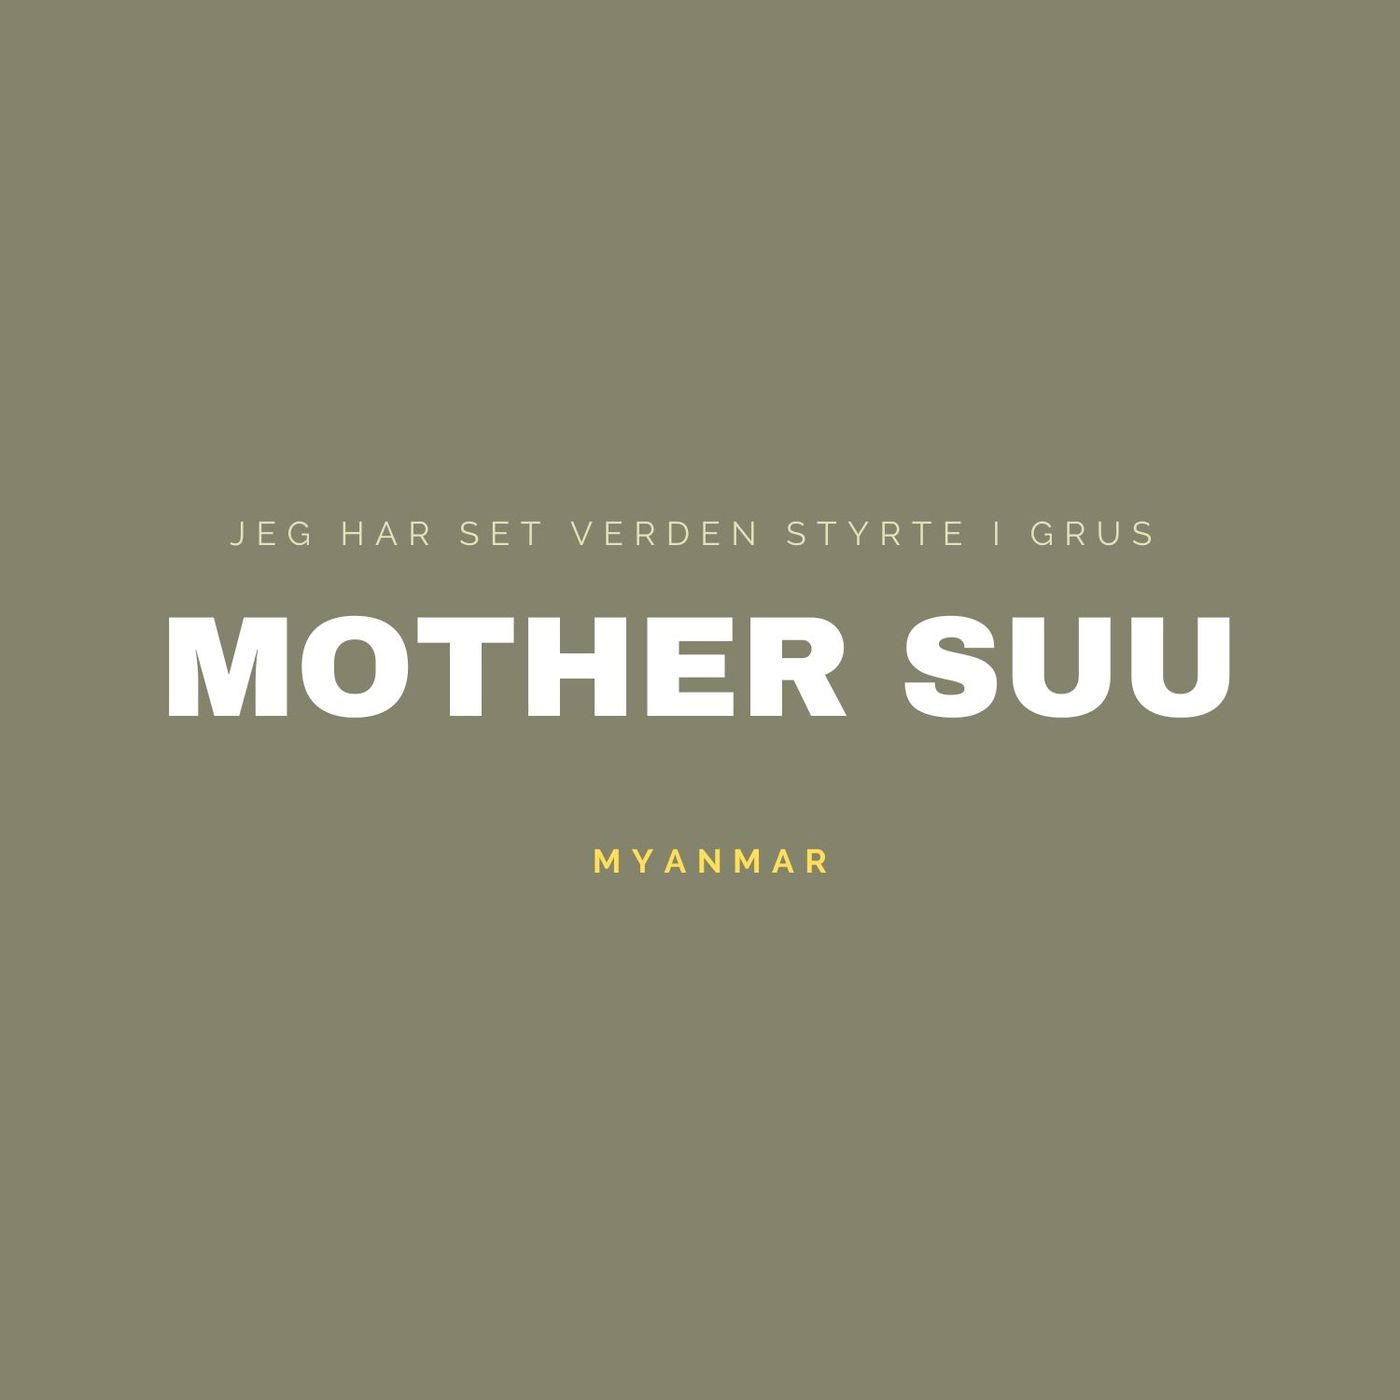 MOTHER SUU - Myanmar